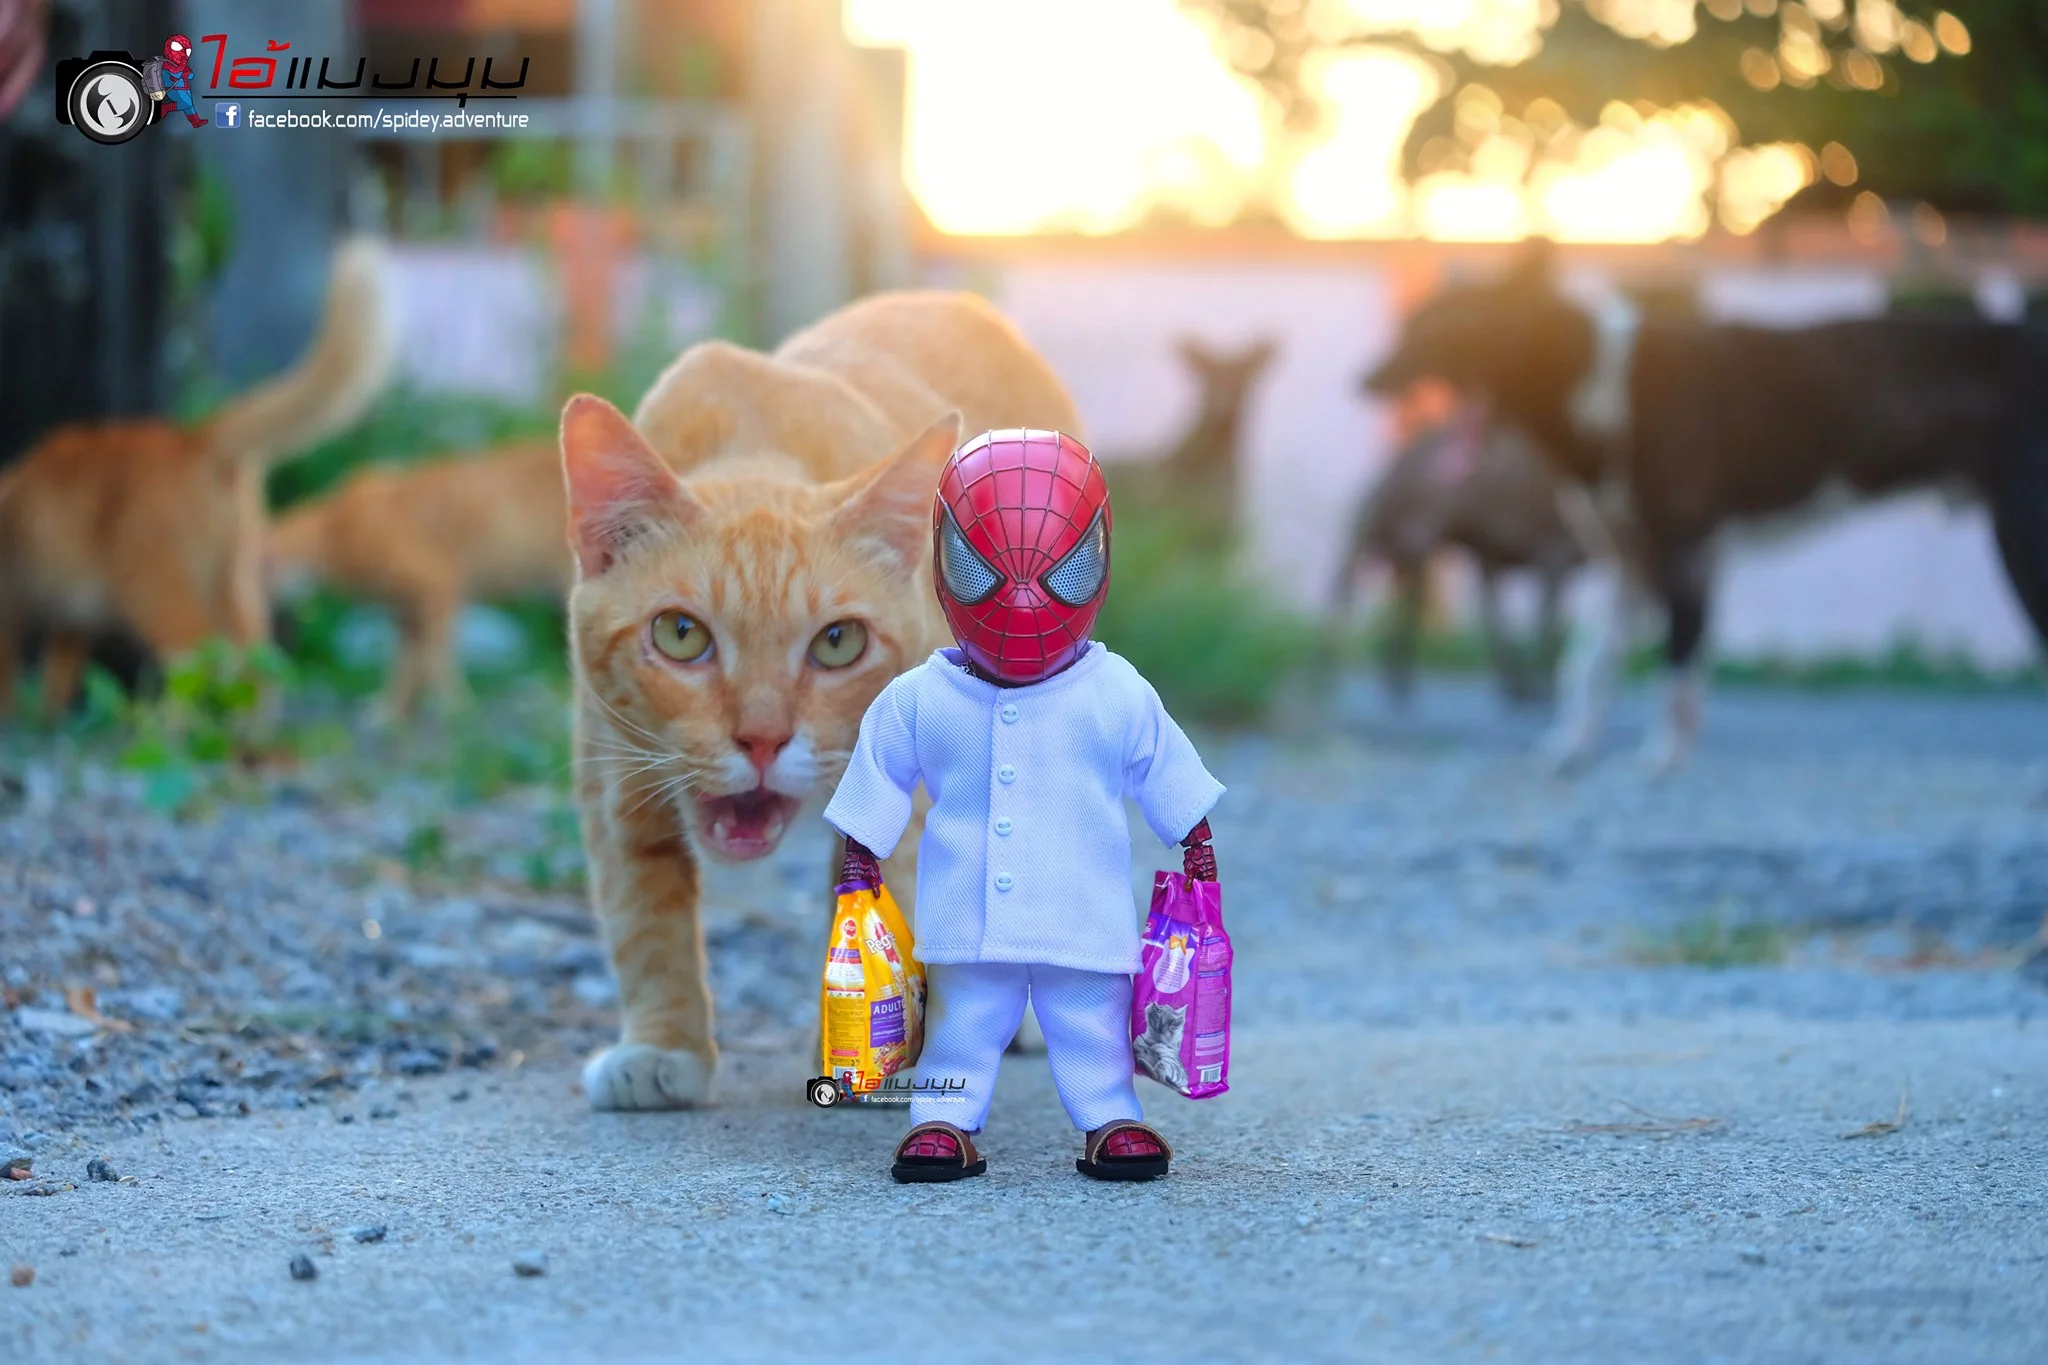 Художник додав до фото з котиками зображення Людини-павука – це виглядає дуже смішно - фото 459365